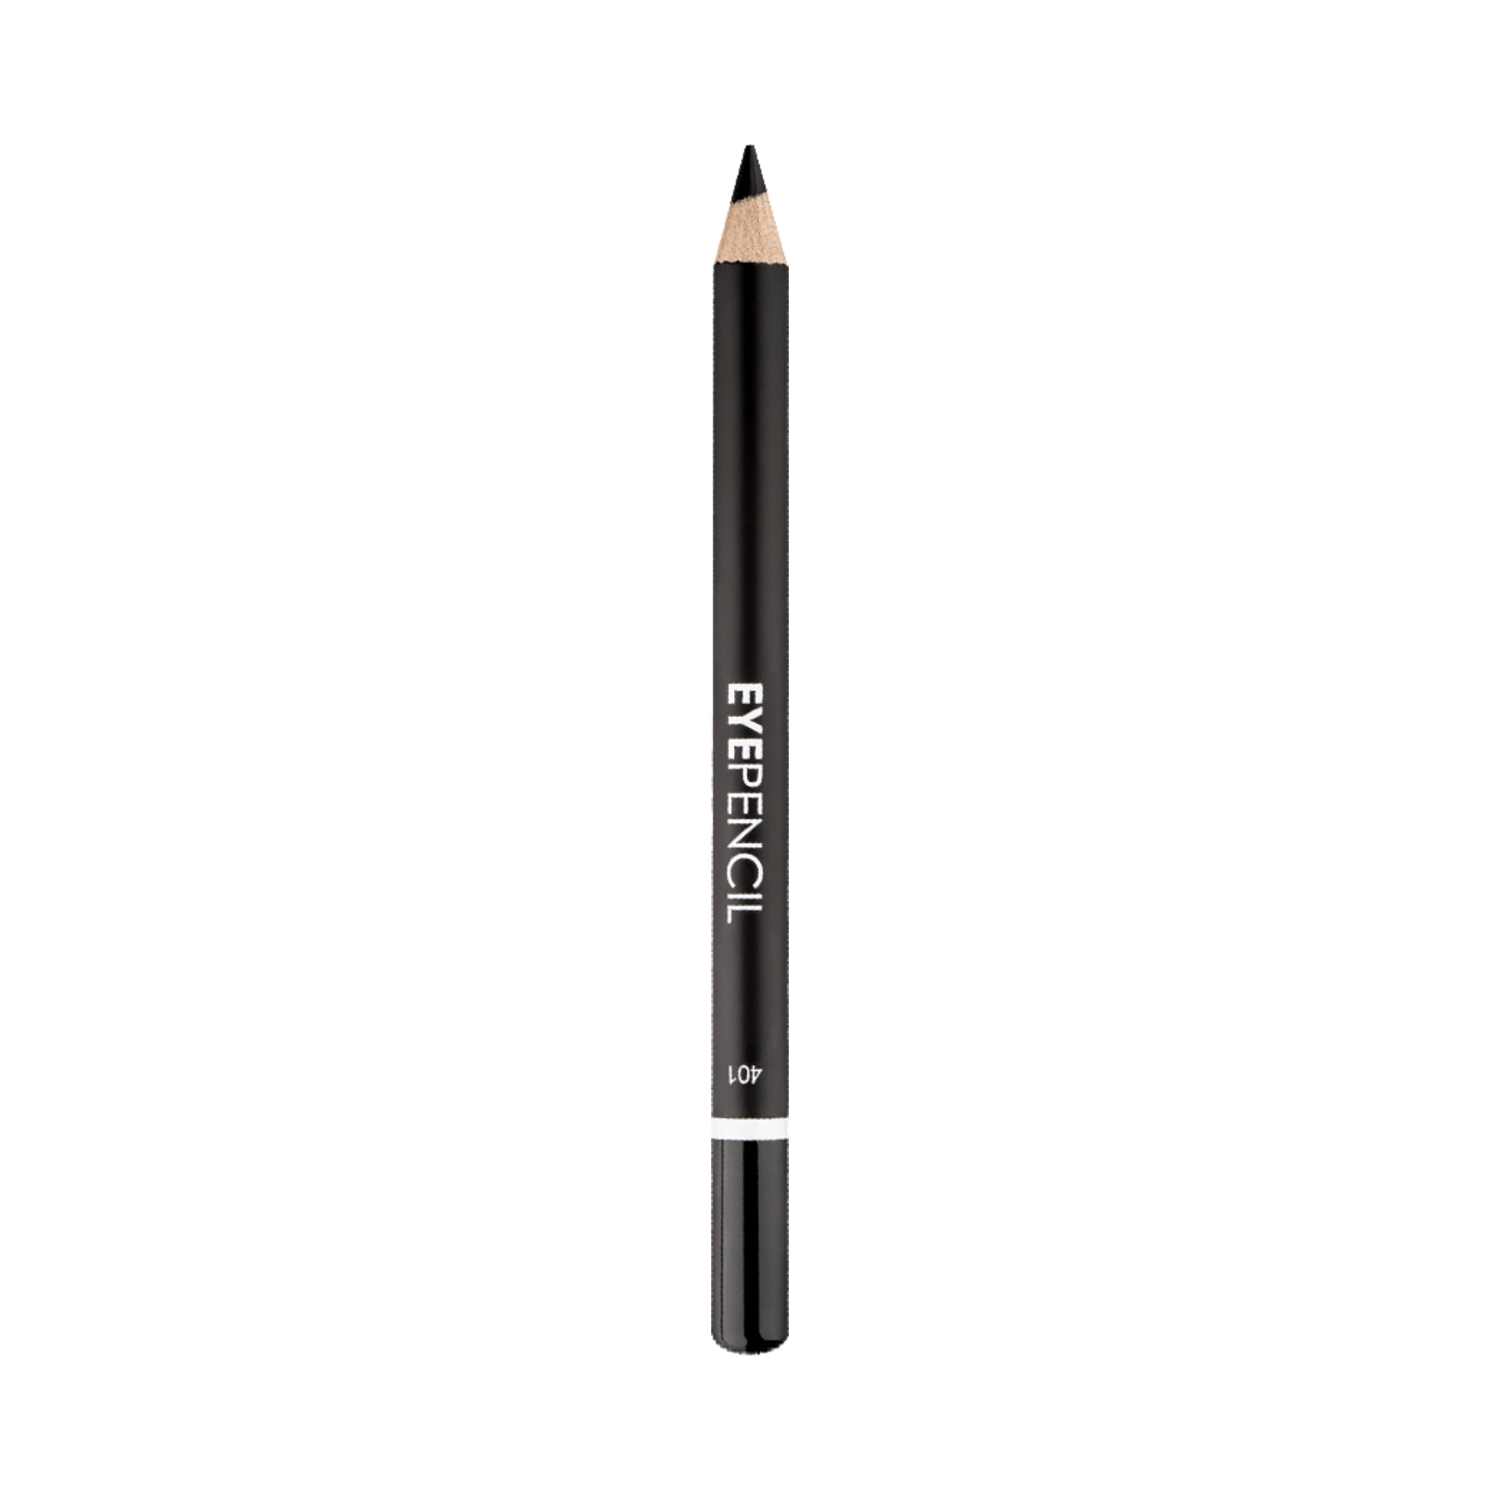 Lamel | Lamel Eye Pencil - N 401 Black (1.7g)